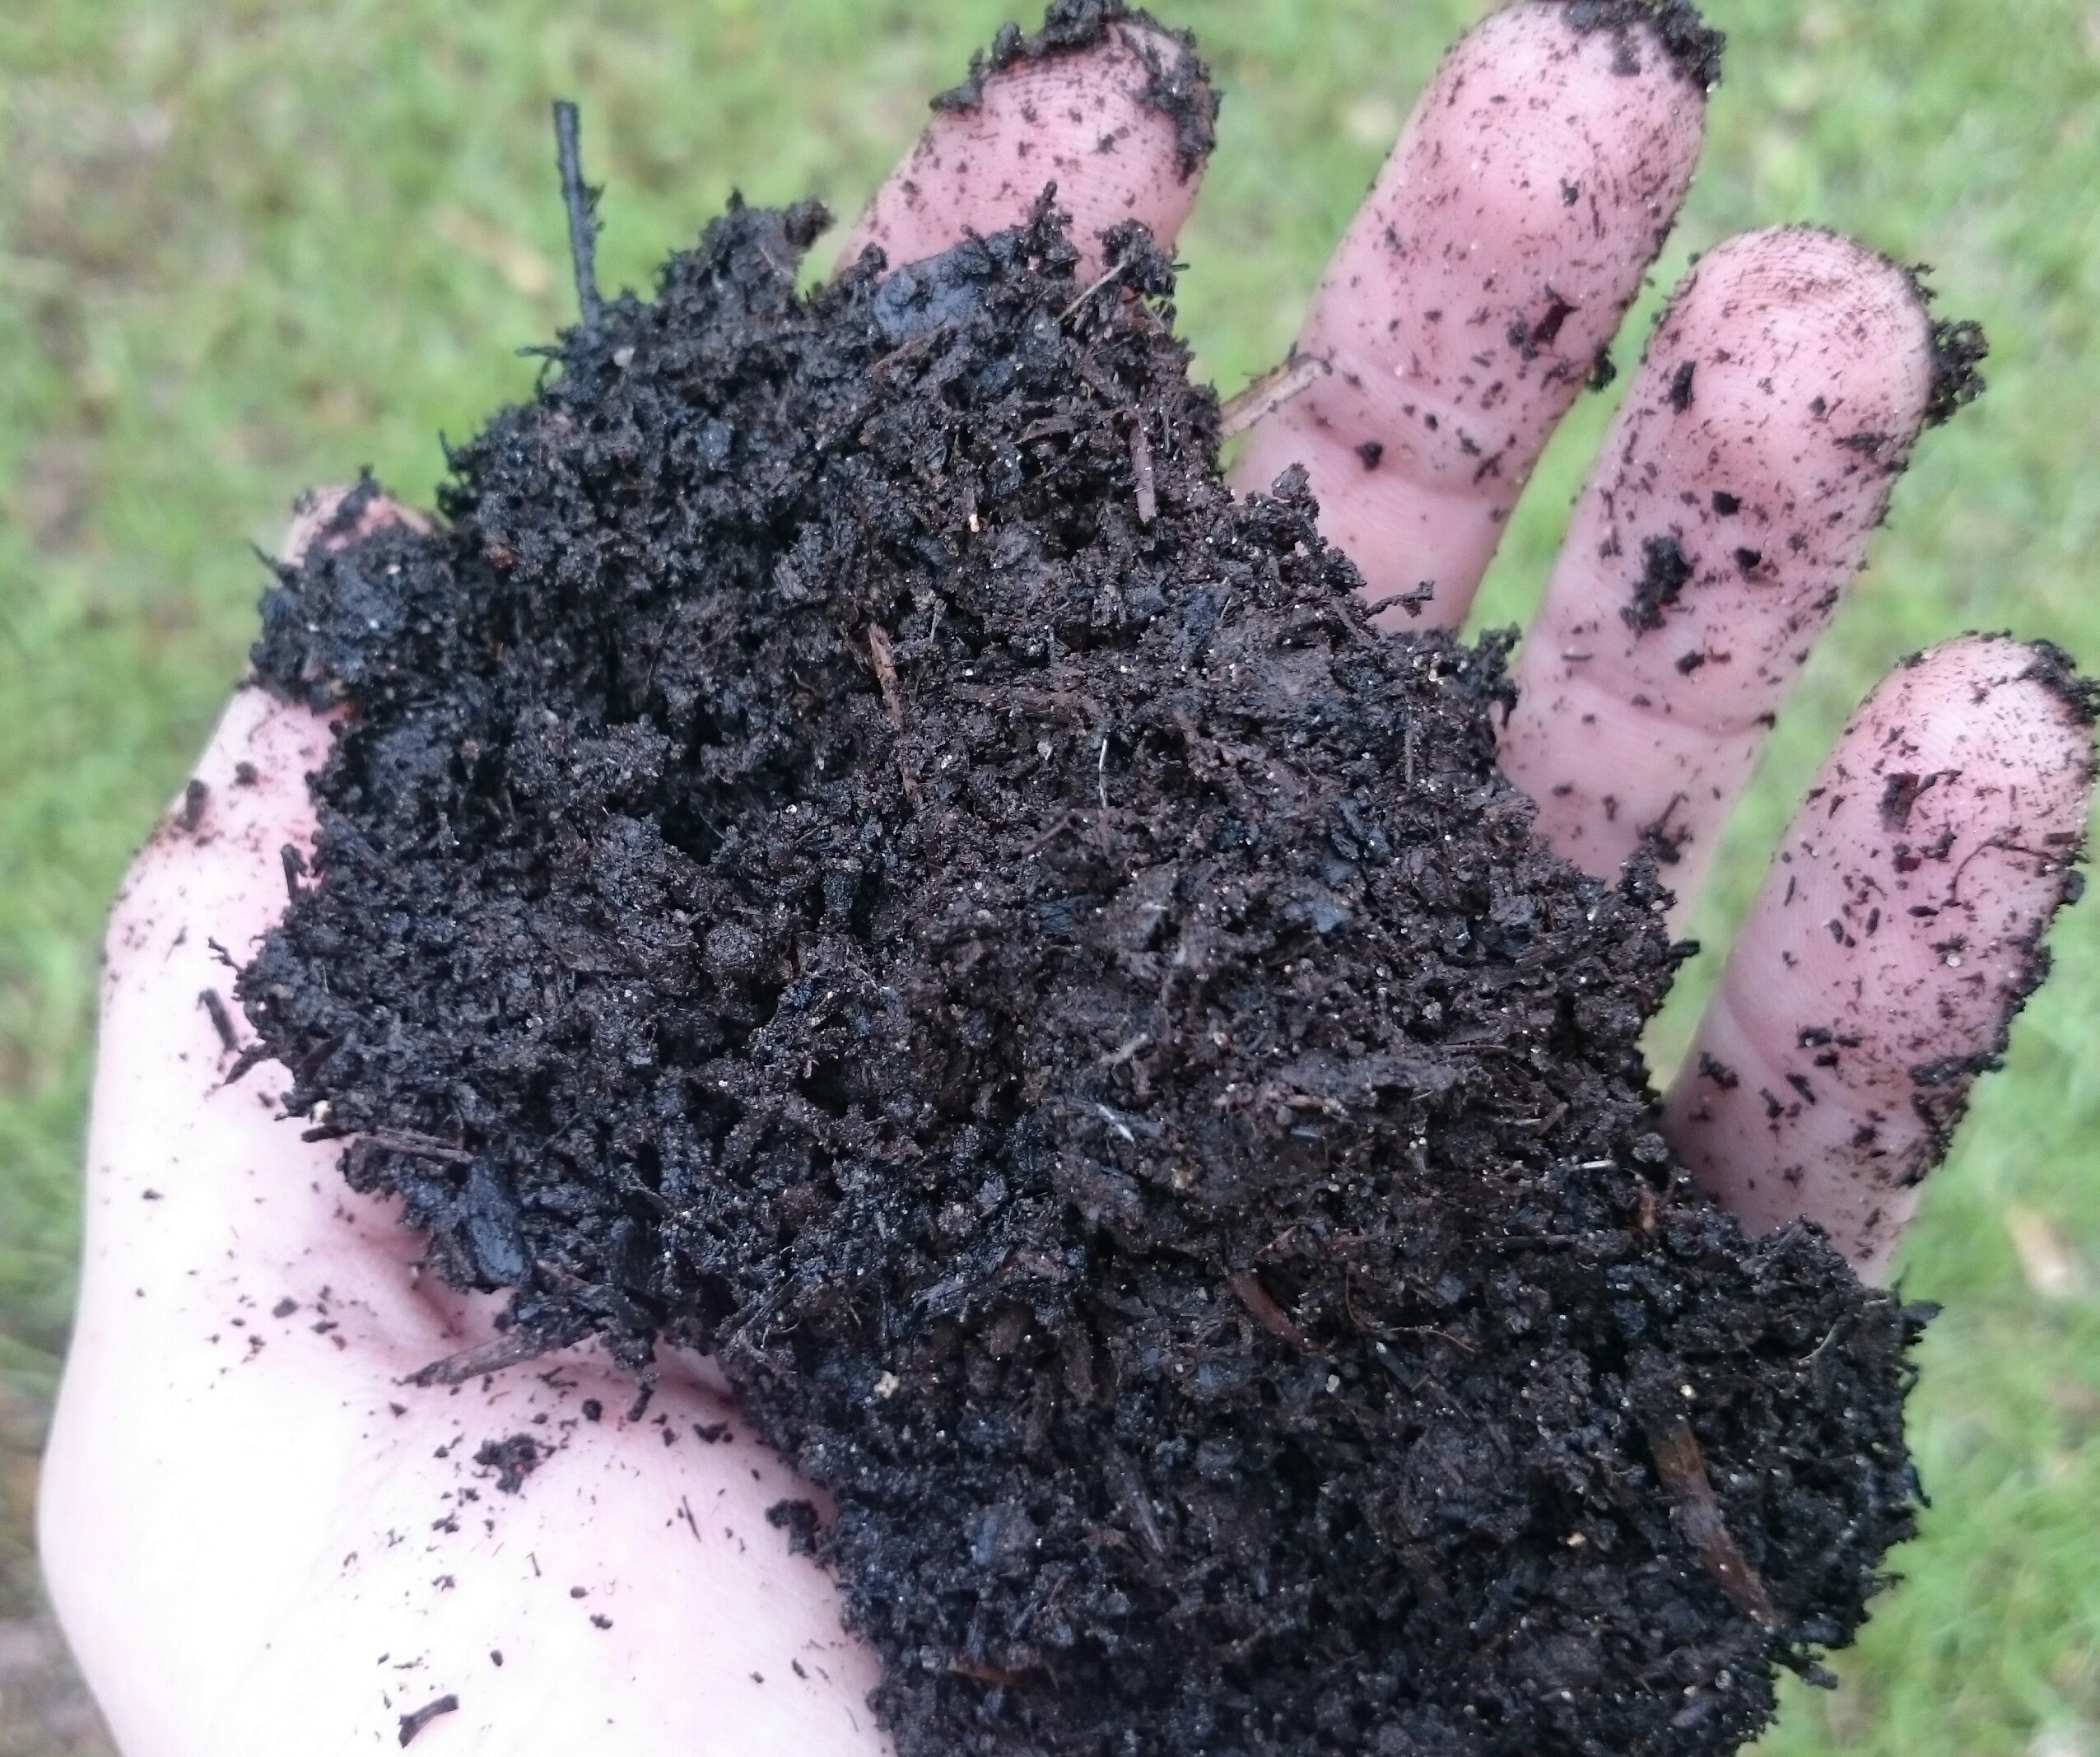 The “Dirt” on Soil